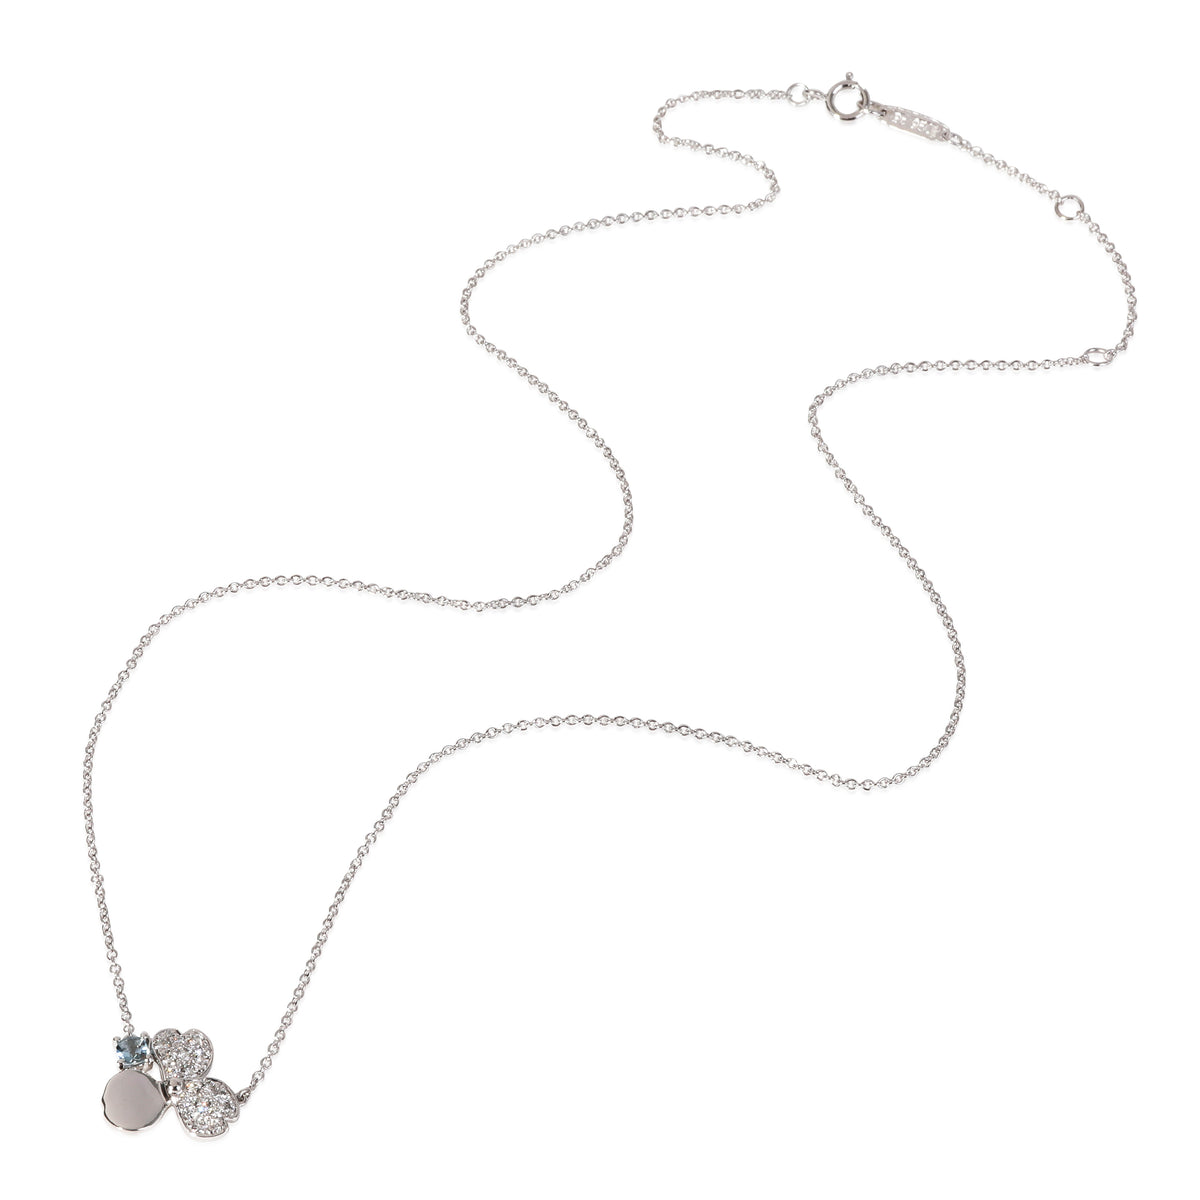 Tiffany & Co. Paper Flowers Aquamarine Diamond Necklace in Platinum 0.13ctw